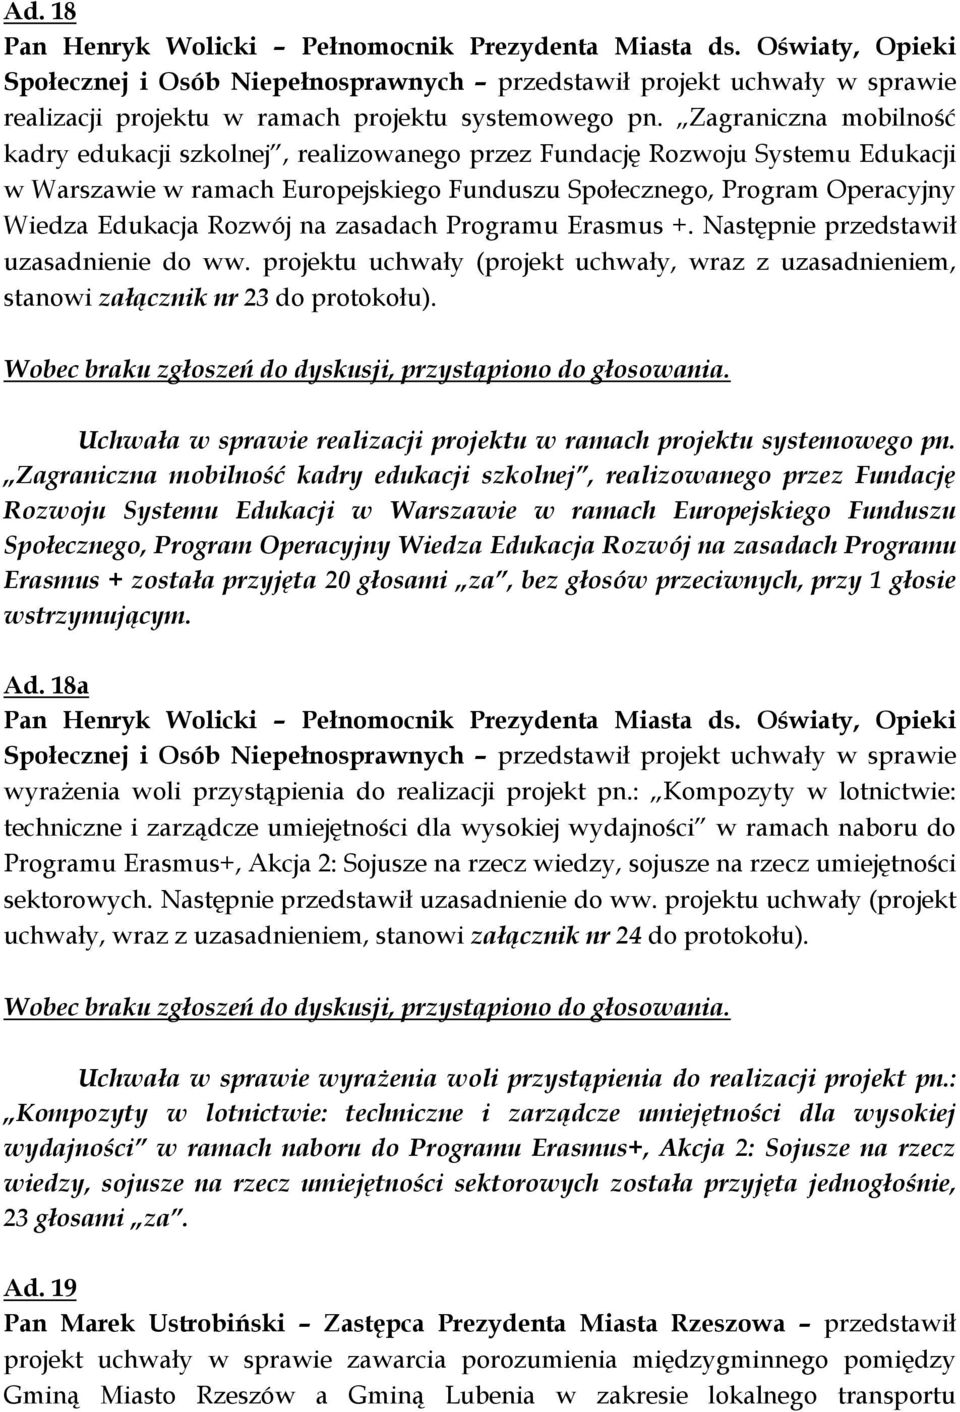 Zagraniczna mobilność kadry edukacji szkolnej, realizowanego przez Fundację Rozwoju Systemu Edukacji w Warszawie w ramach Europejskiego Funduszu Społecznego, Program Operacyjny Wiedza Edukacja Rozwój